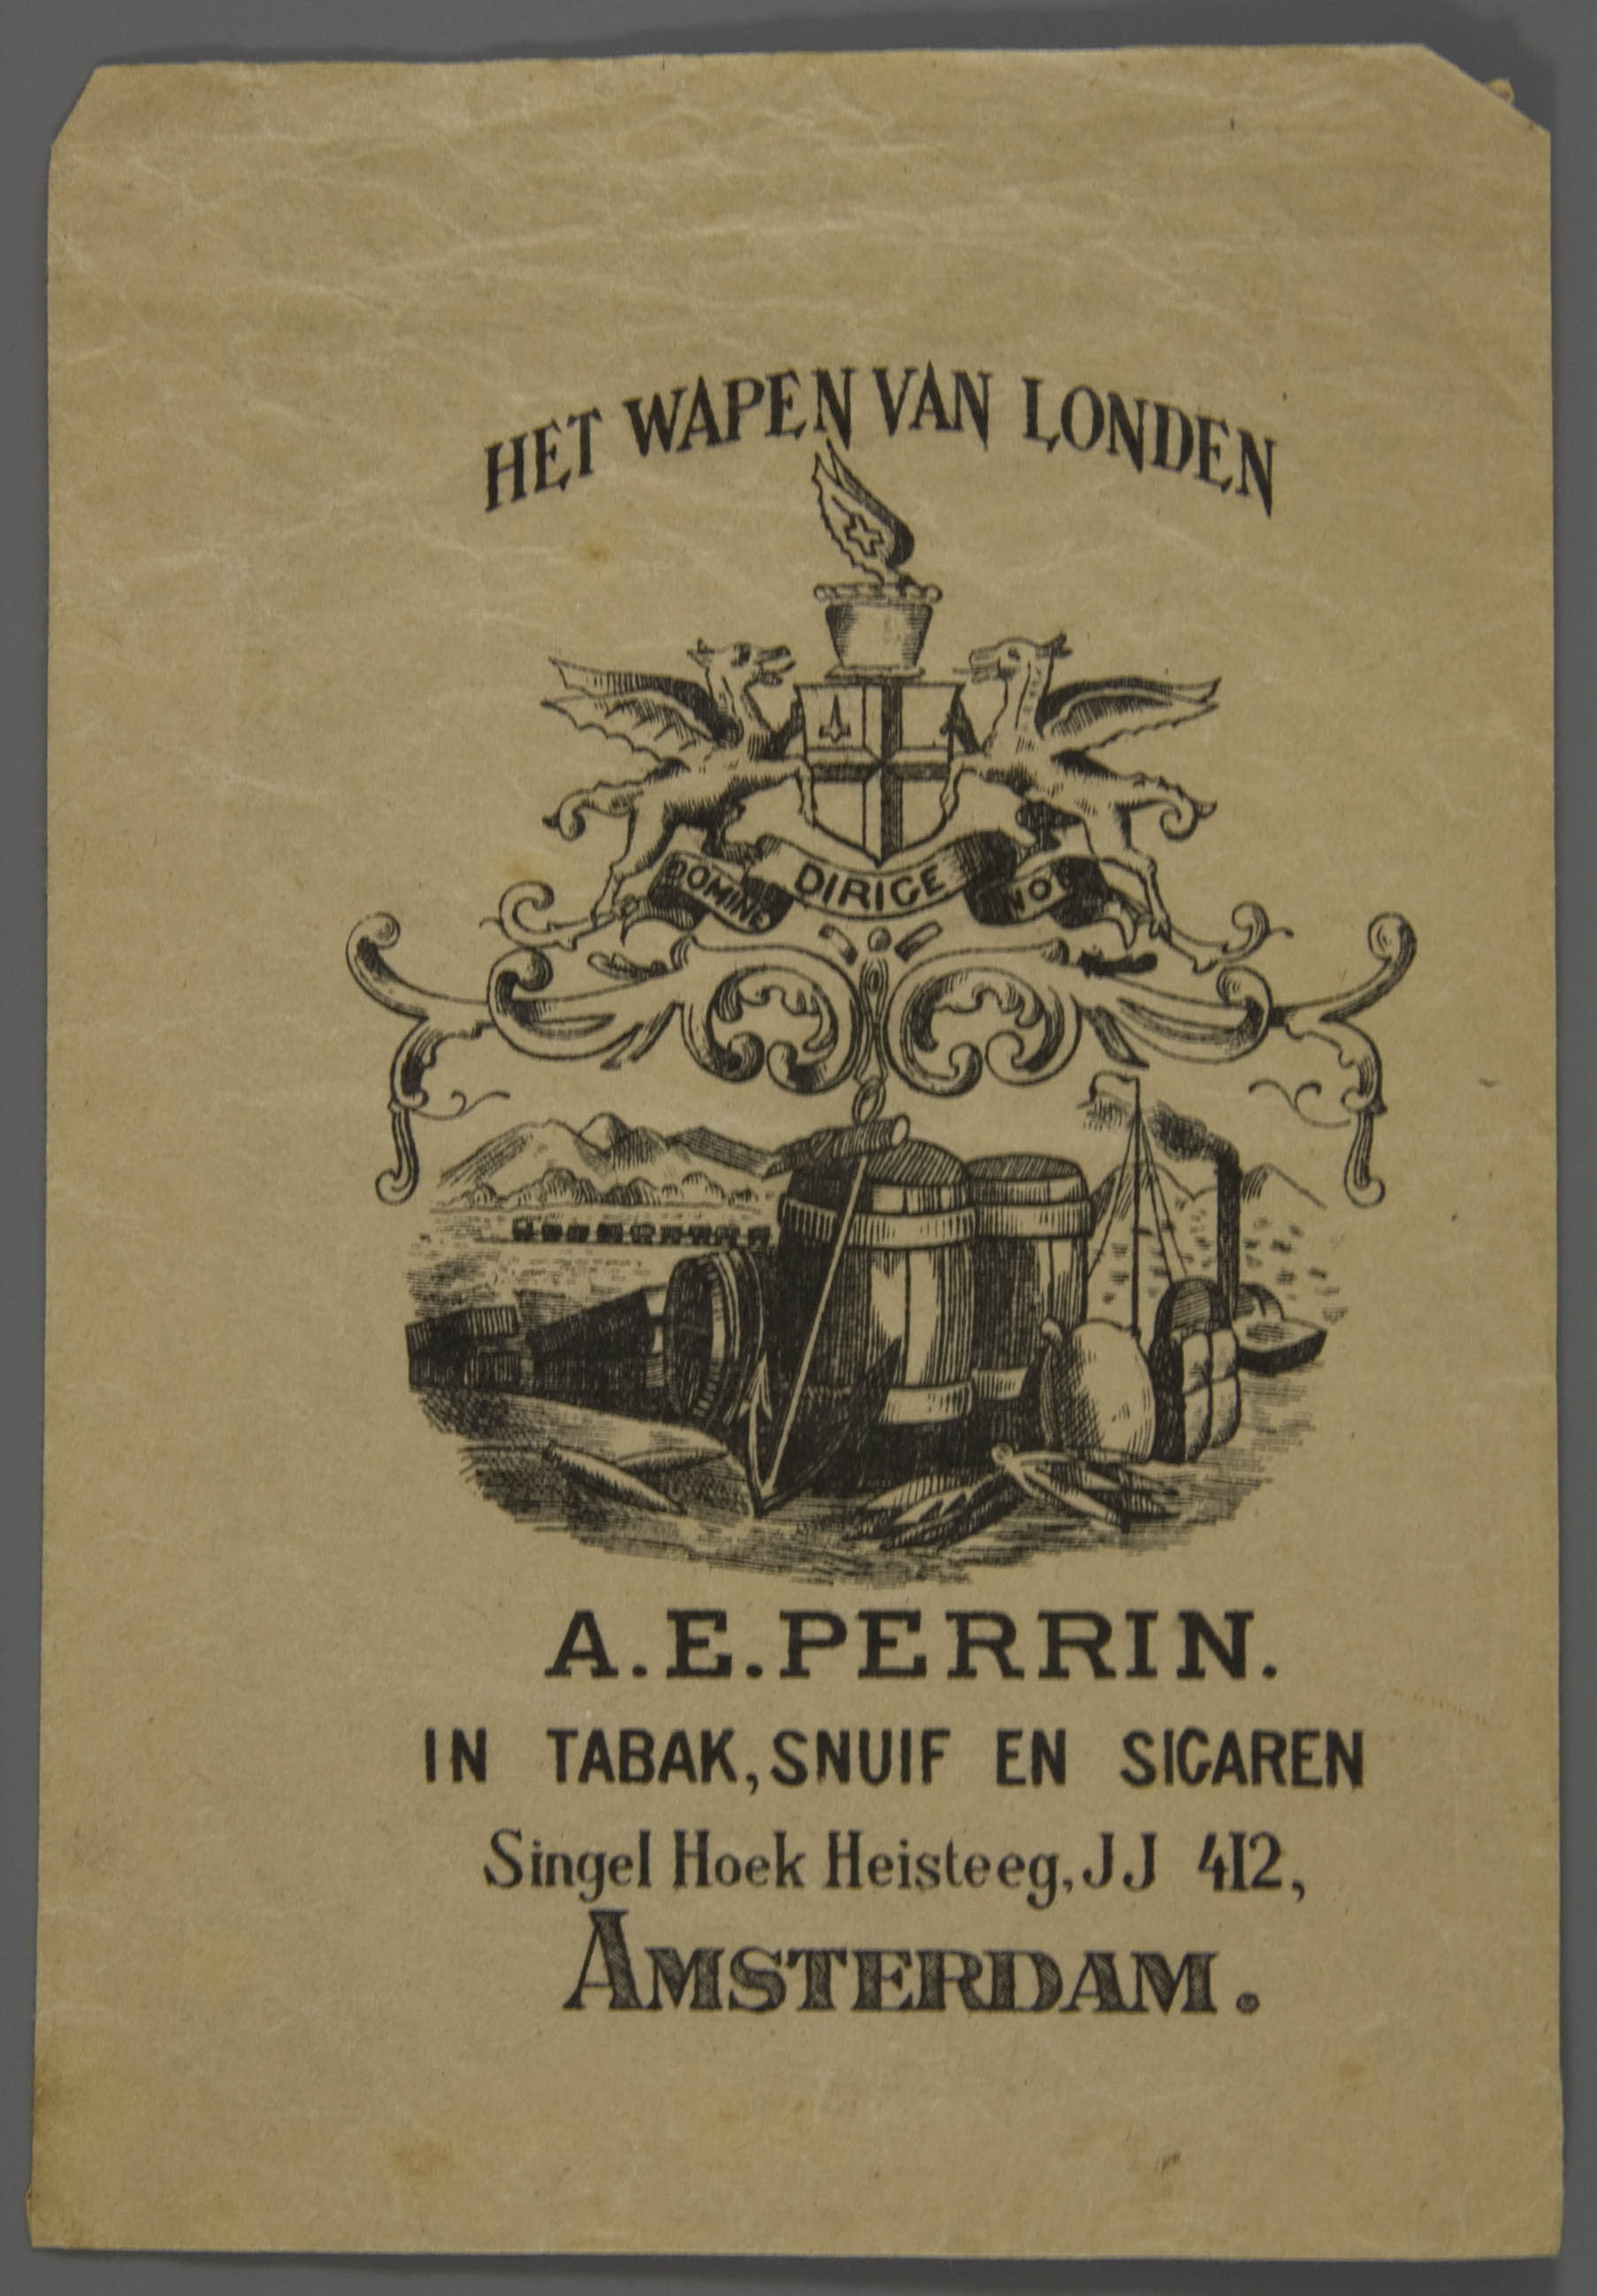 10-25.992-amsterdam-cigar-bag-wapen-londen-1